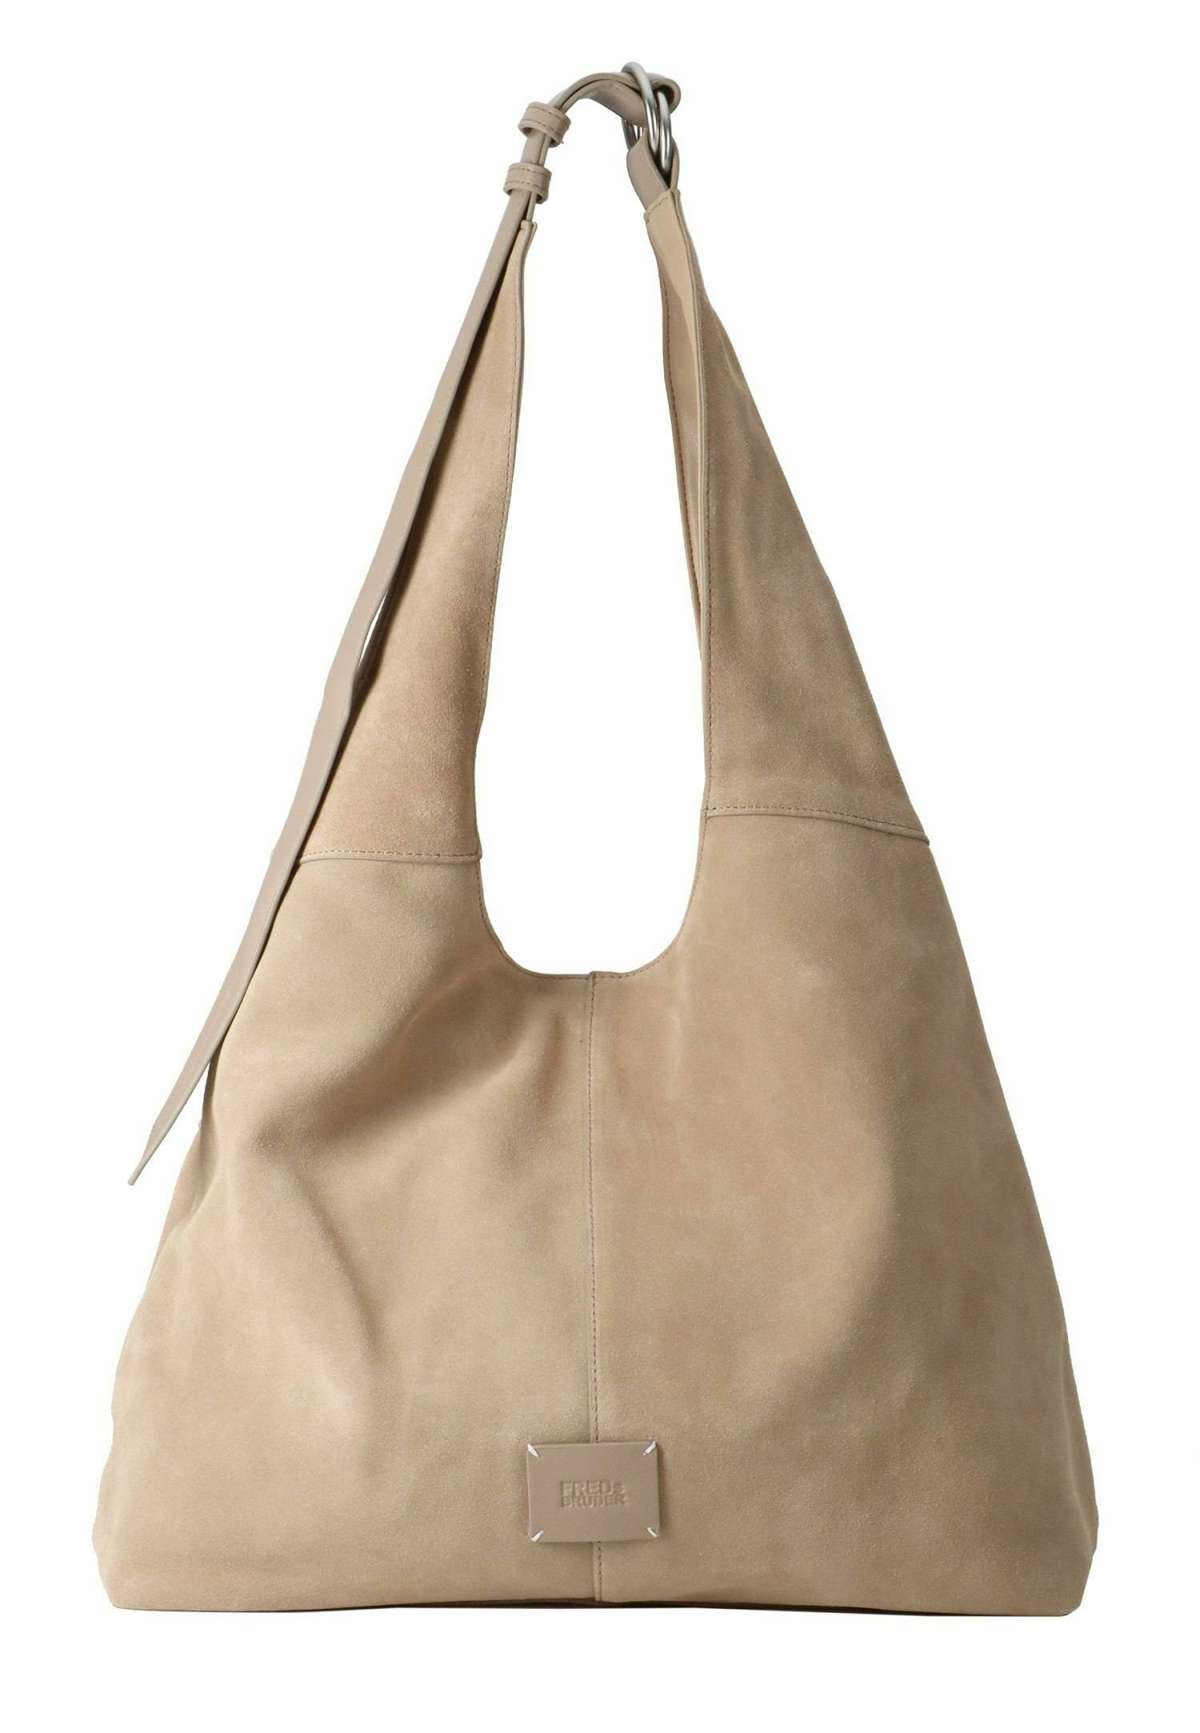 LUCIN HOBO - Shopping Bag LUCIN HOBO